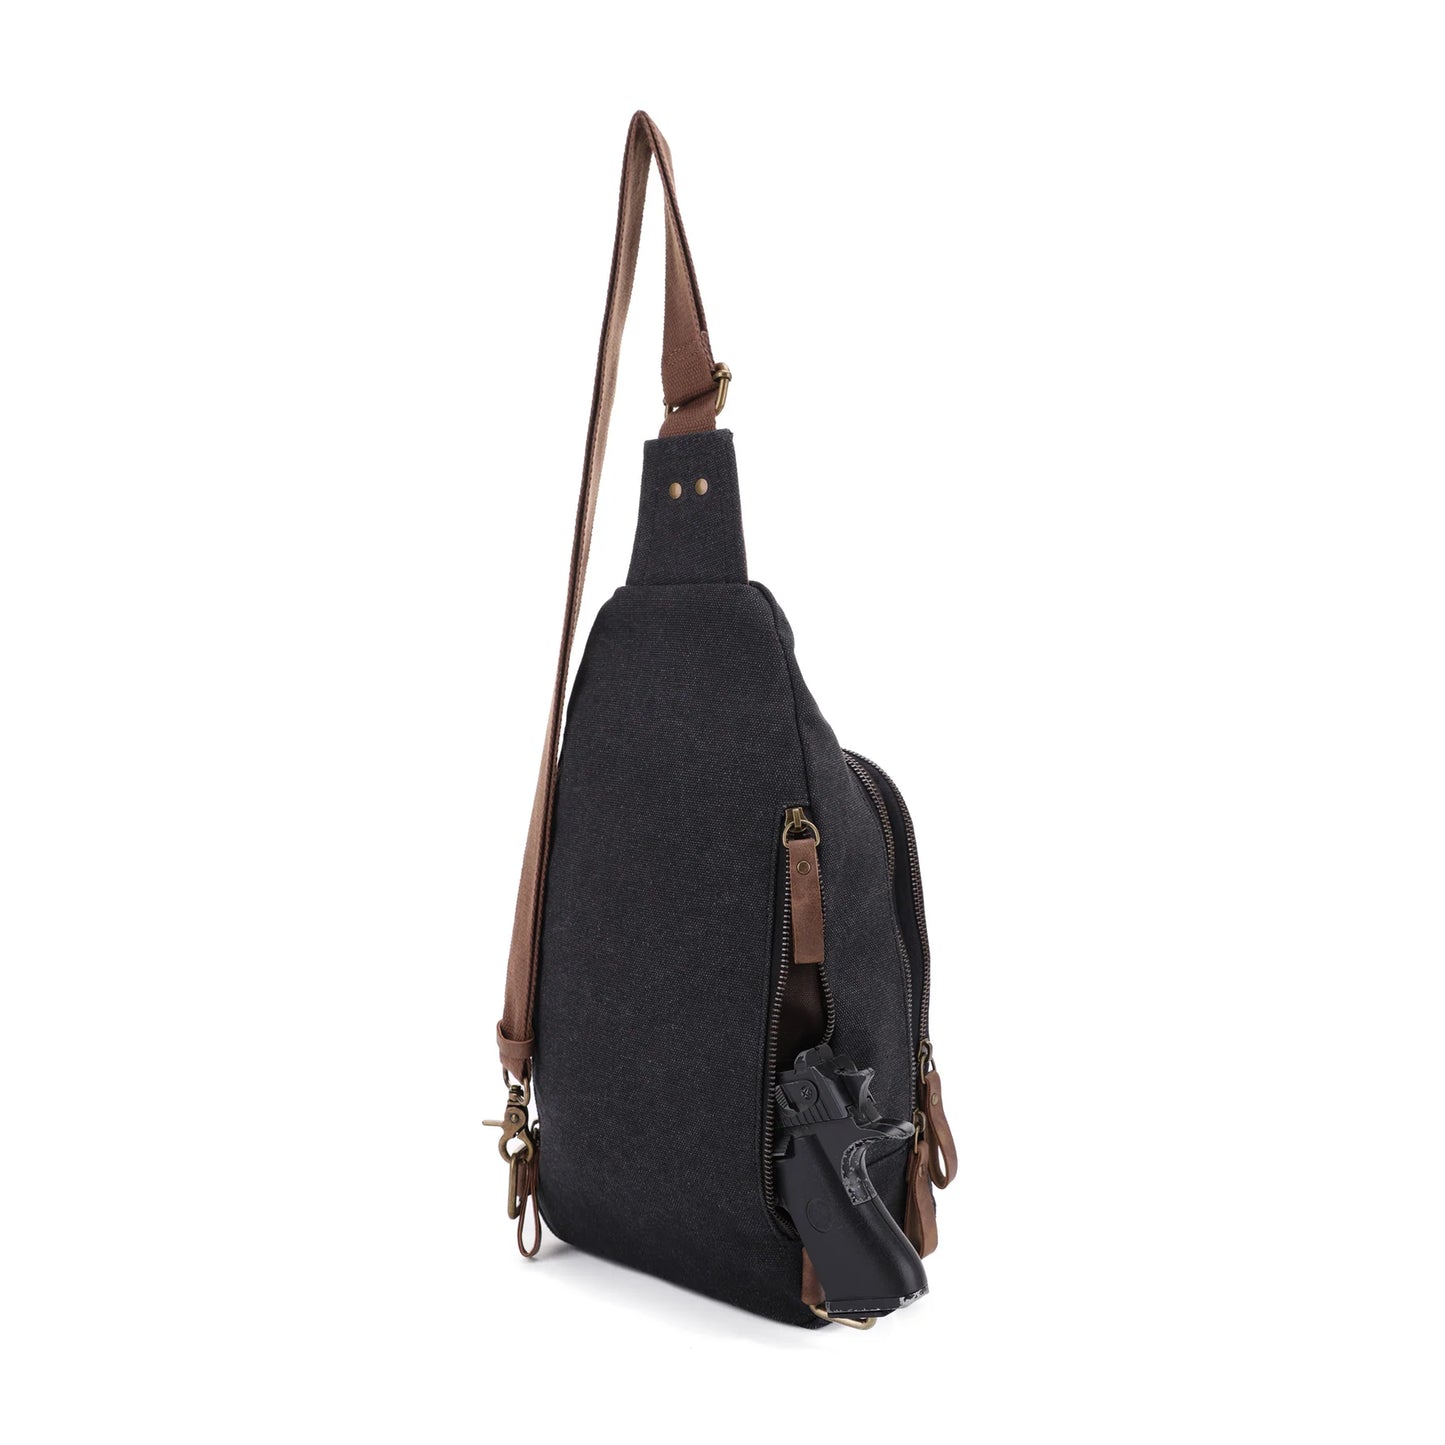 Glacier Canvas Concealed Carry Sling Backpack - Hiding Hilda, LLC